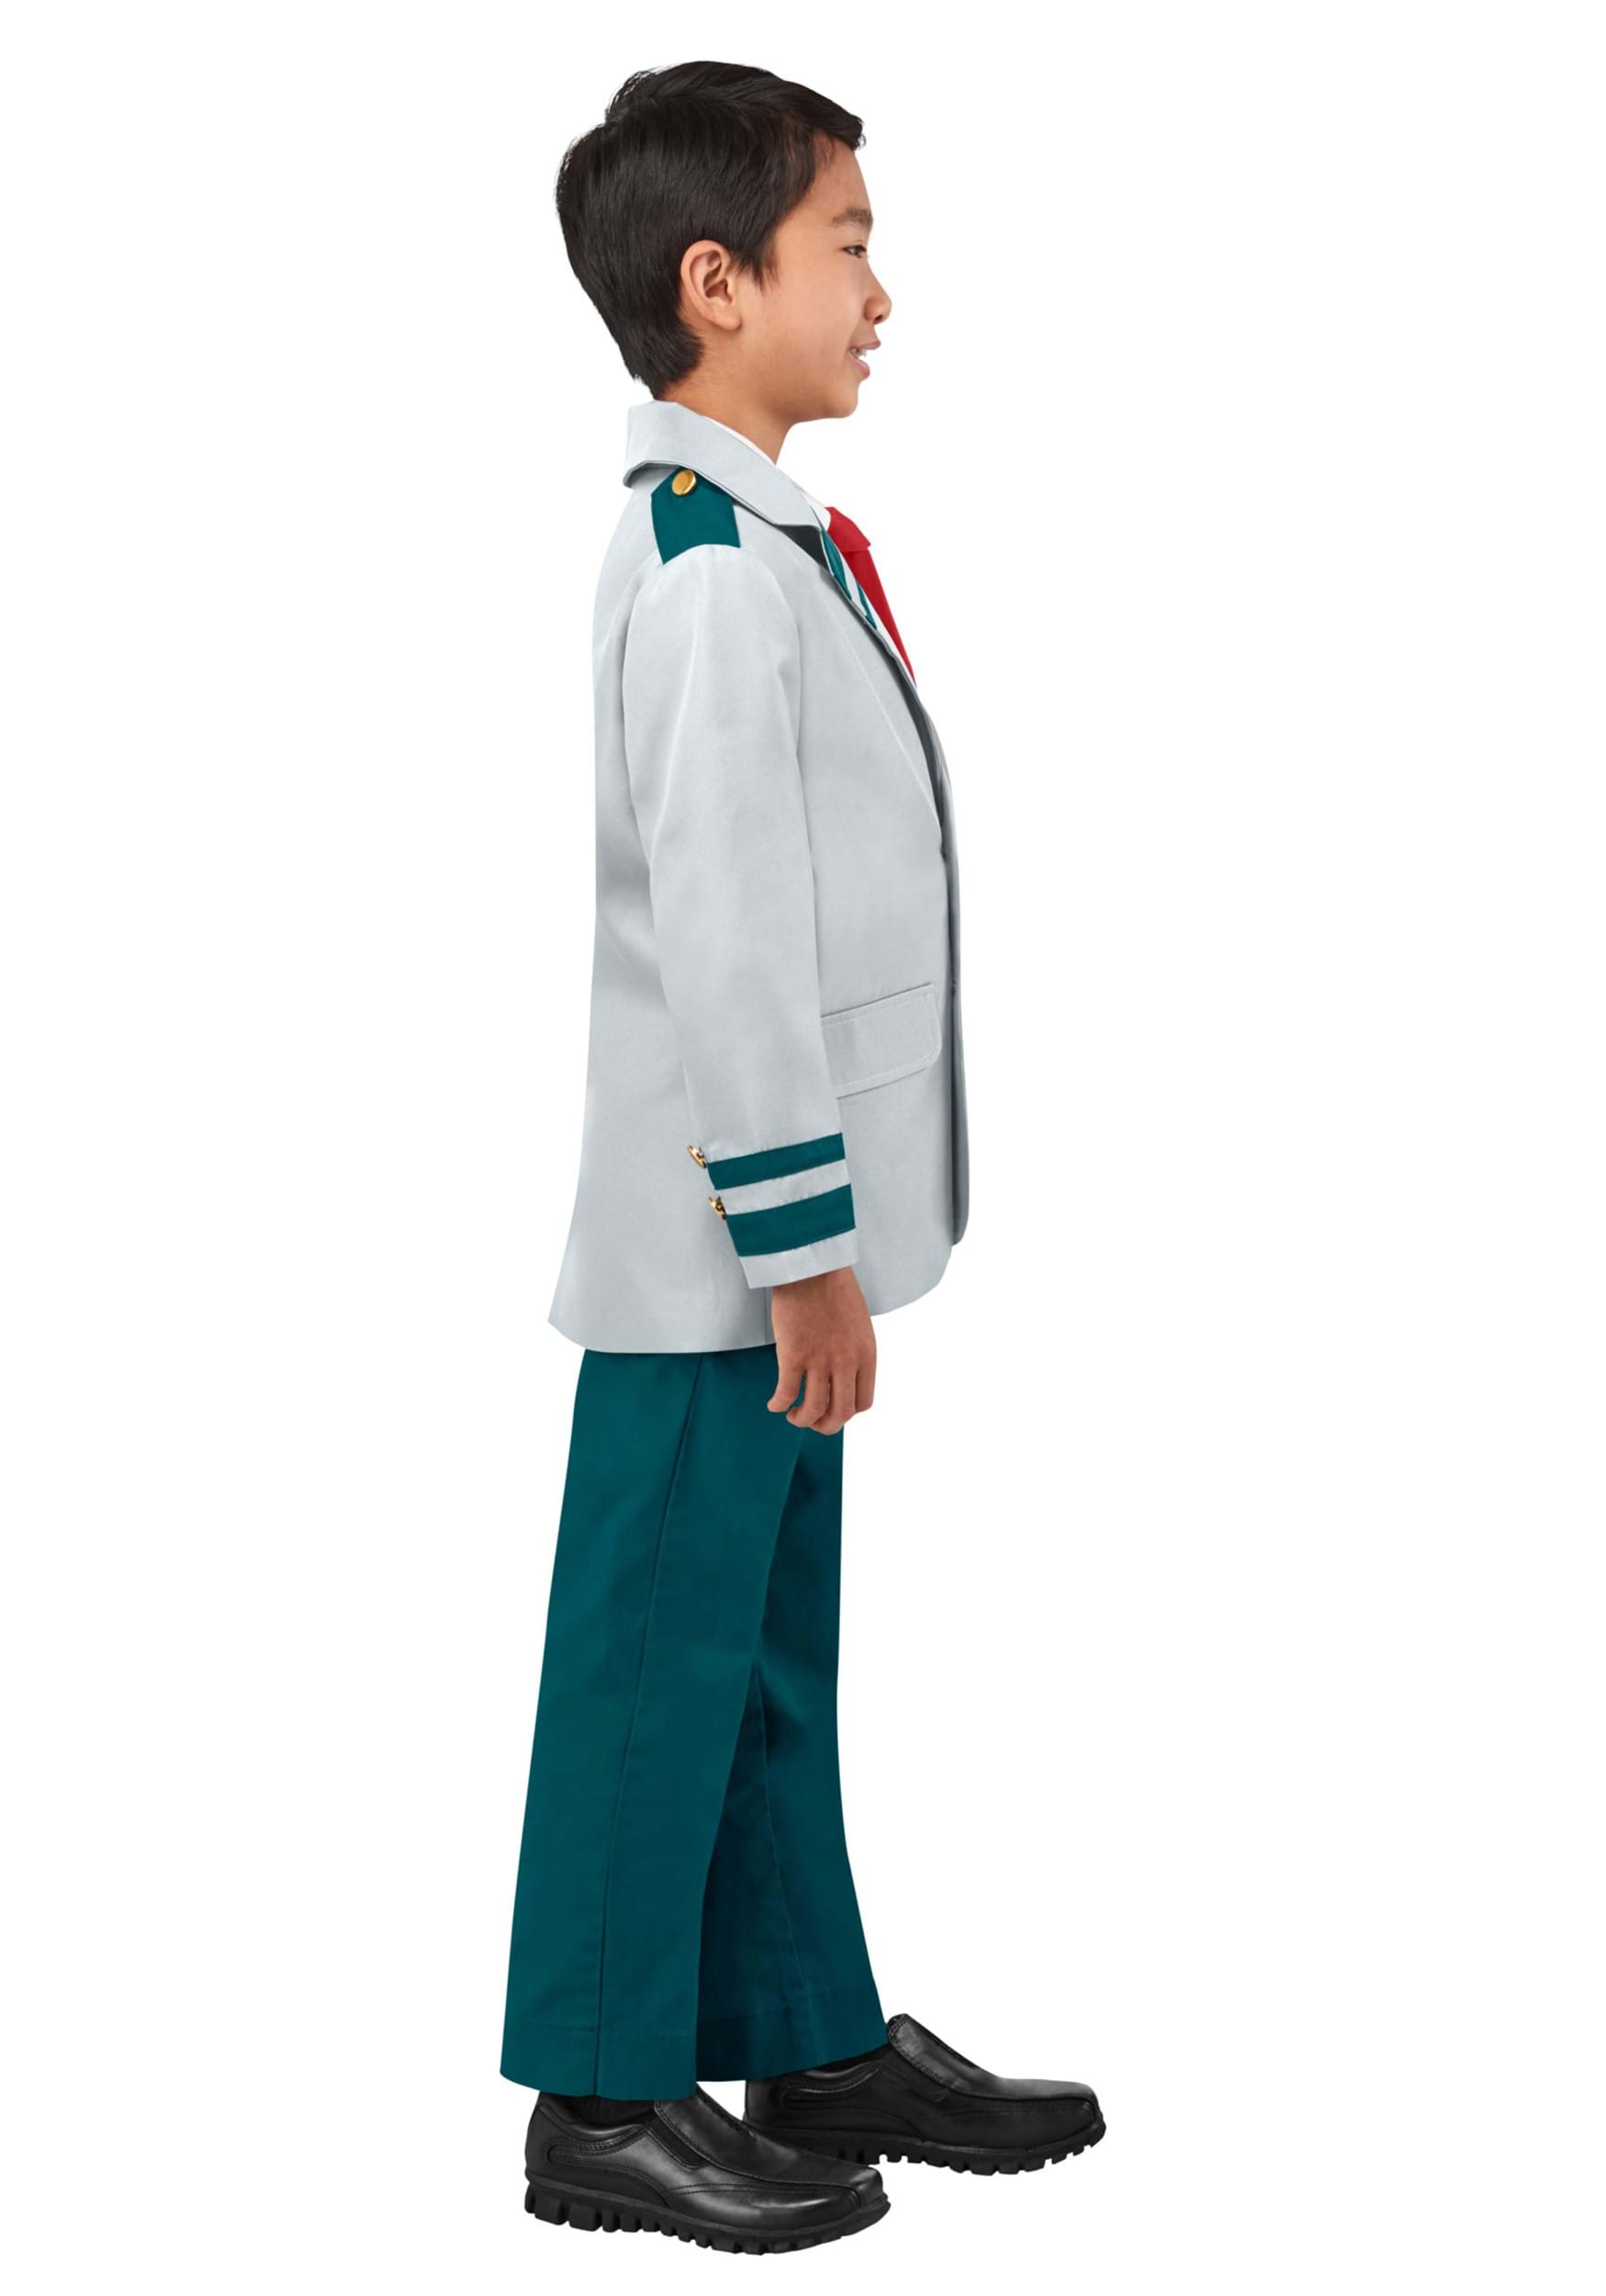 My Hero Academia Kid's School Uniform Fancy Dress Costume